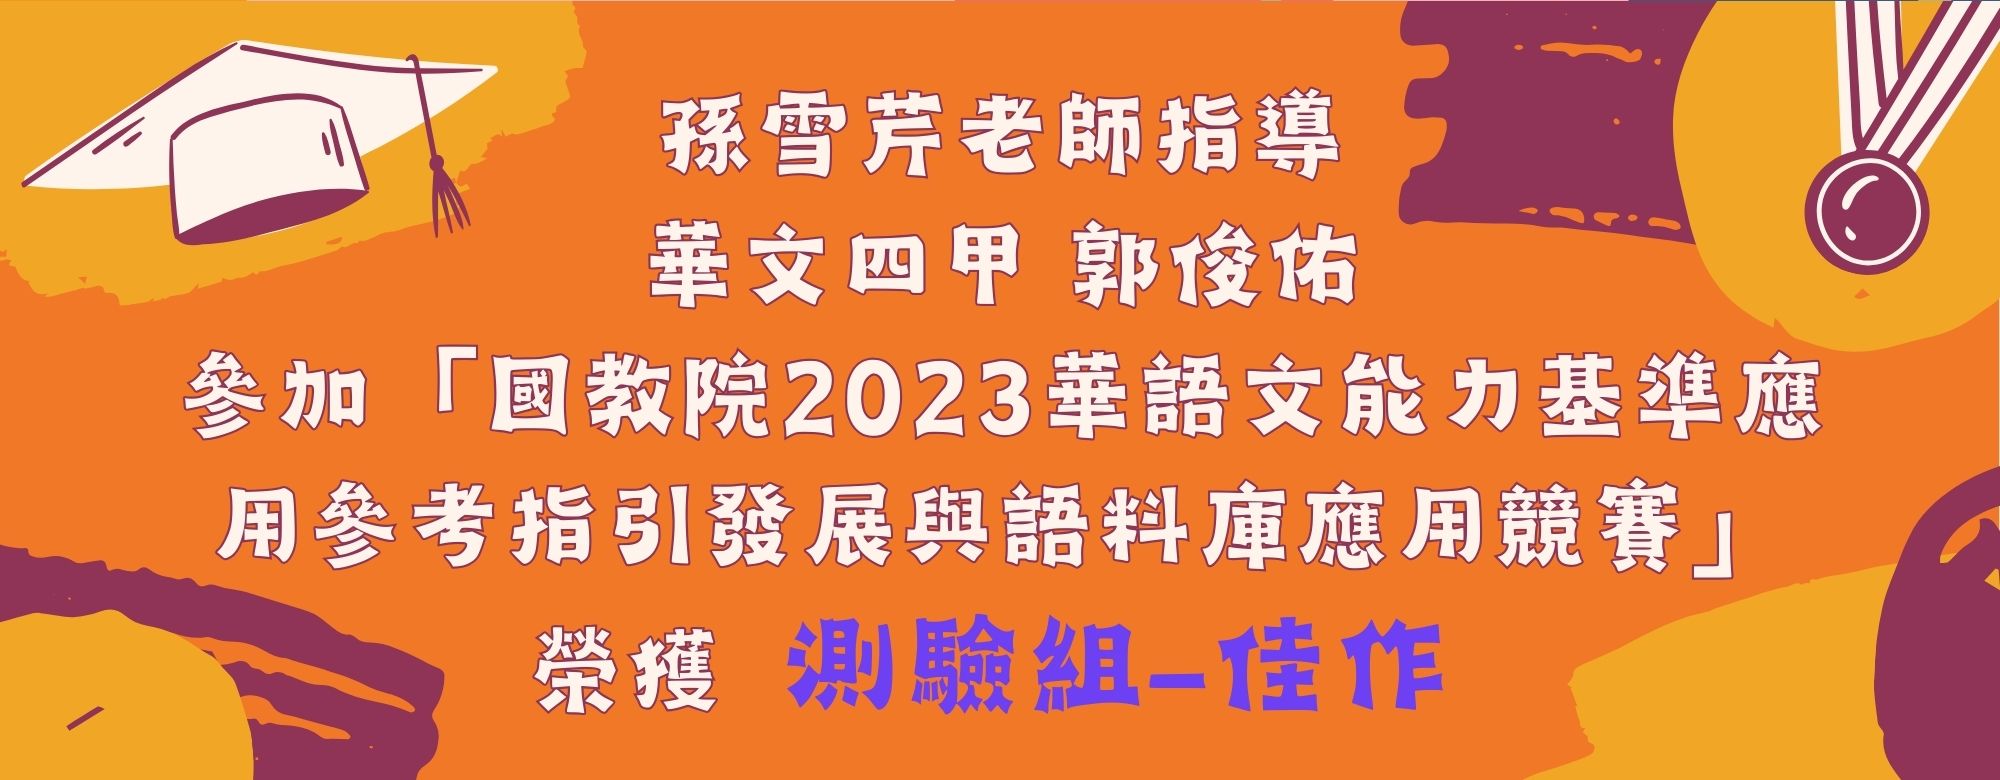 郭俊佑_2023 華語文能力基準應用參考指引與語料庫應用競賽測驗組佳作(另開新視窗)